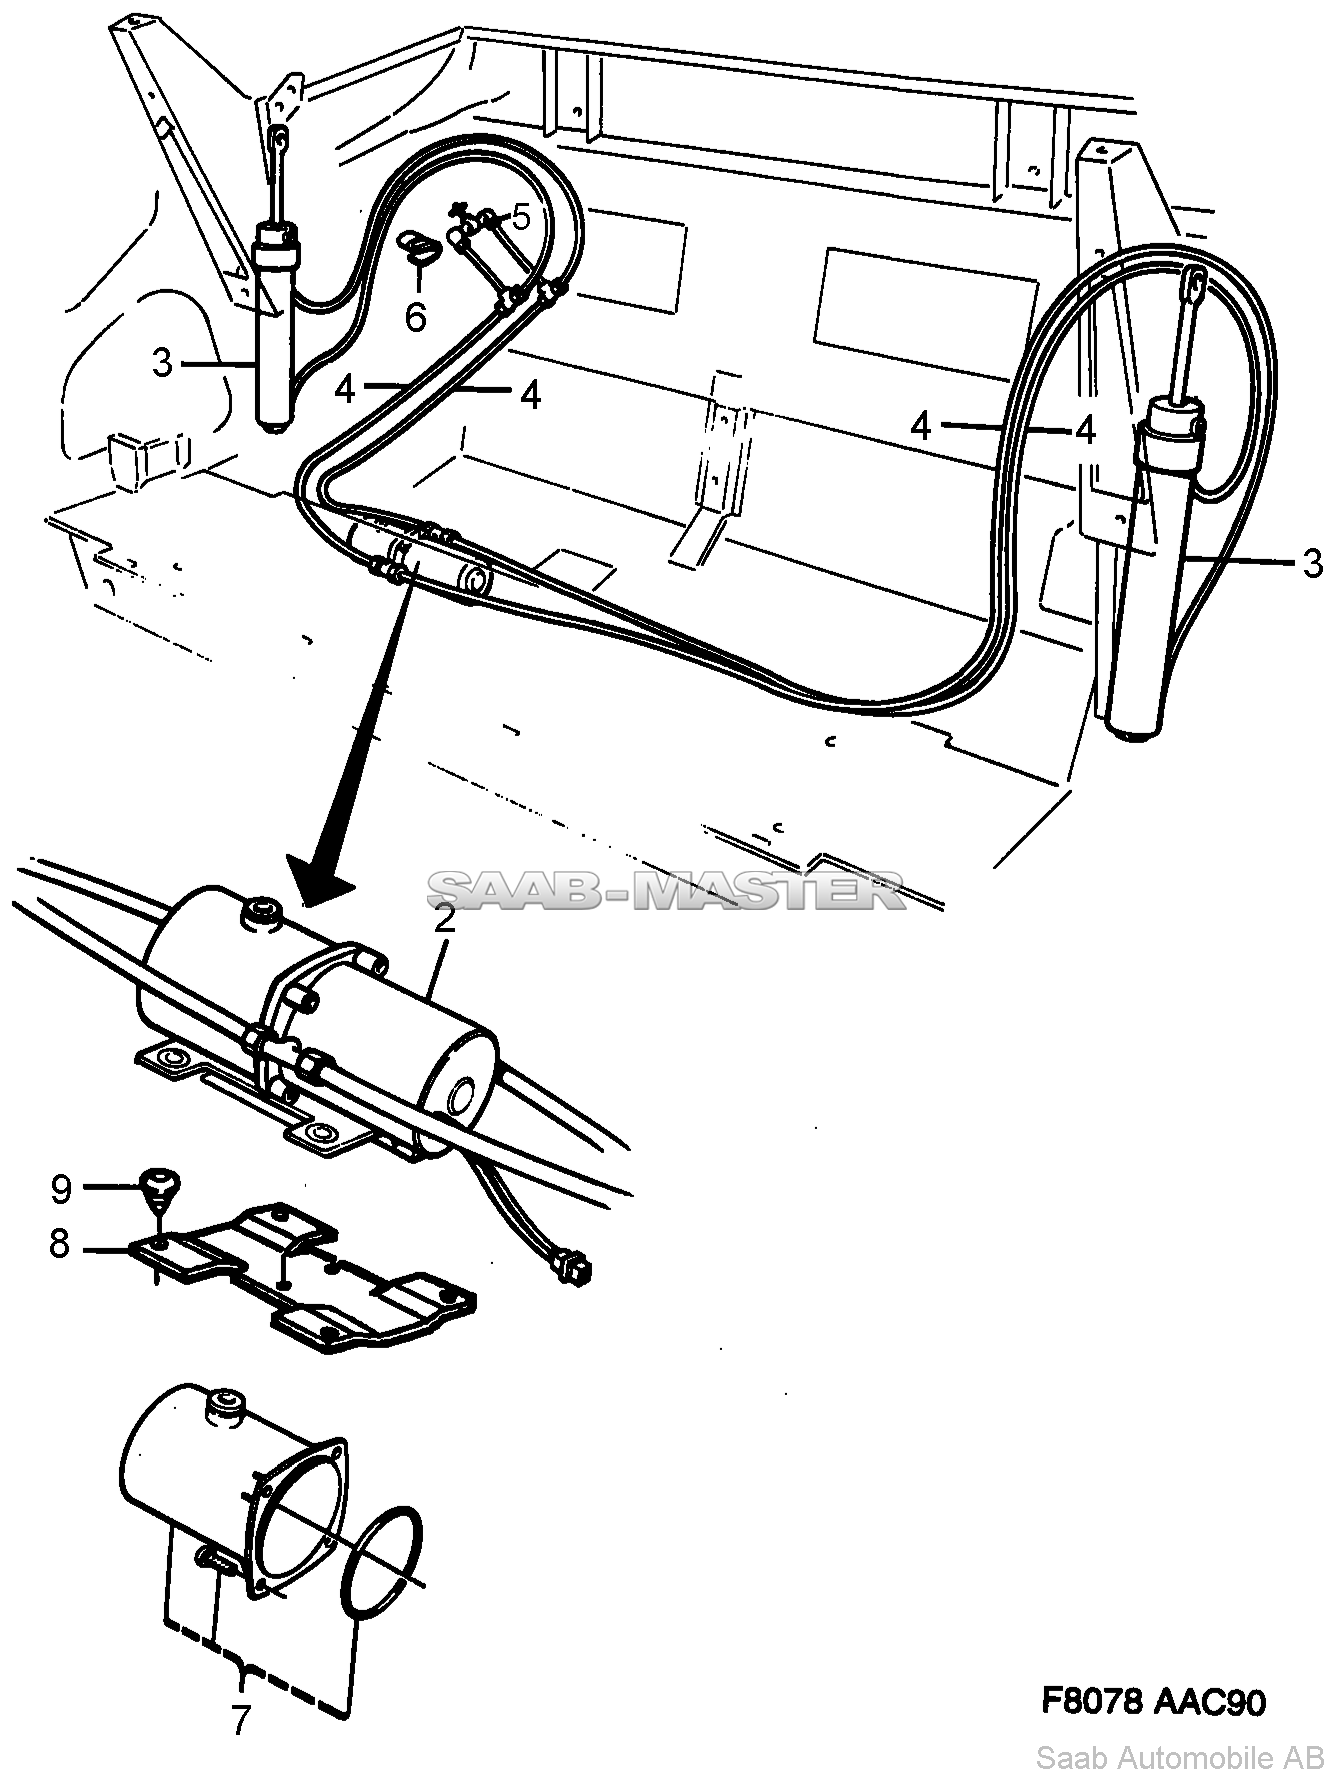 Гидравлическая система - Кабриолет   Касается также Кабриолет 1994